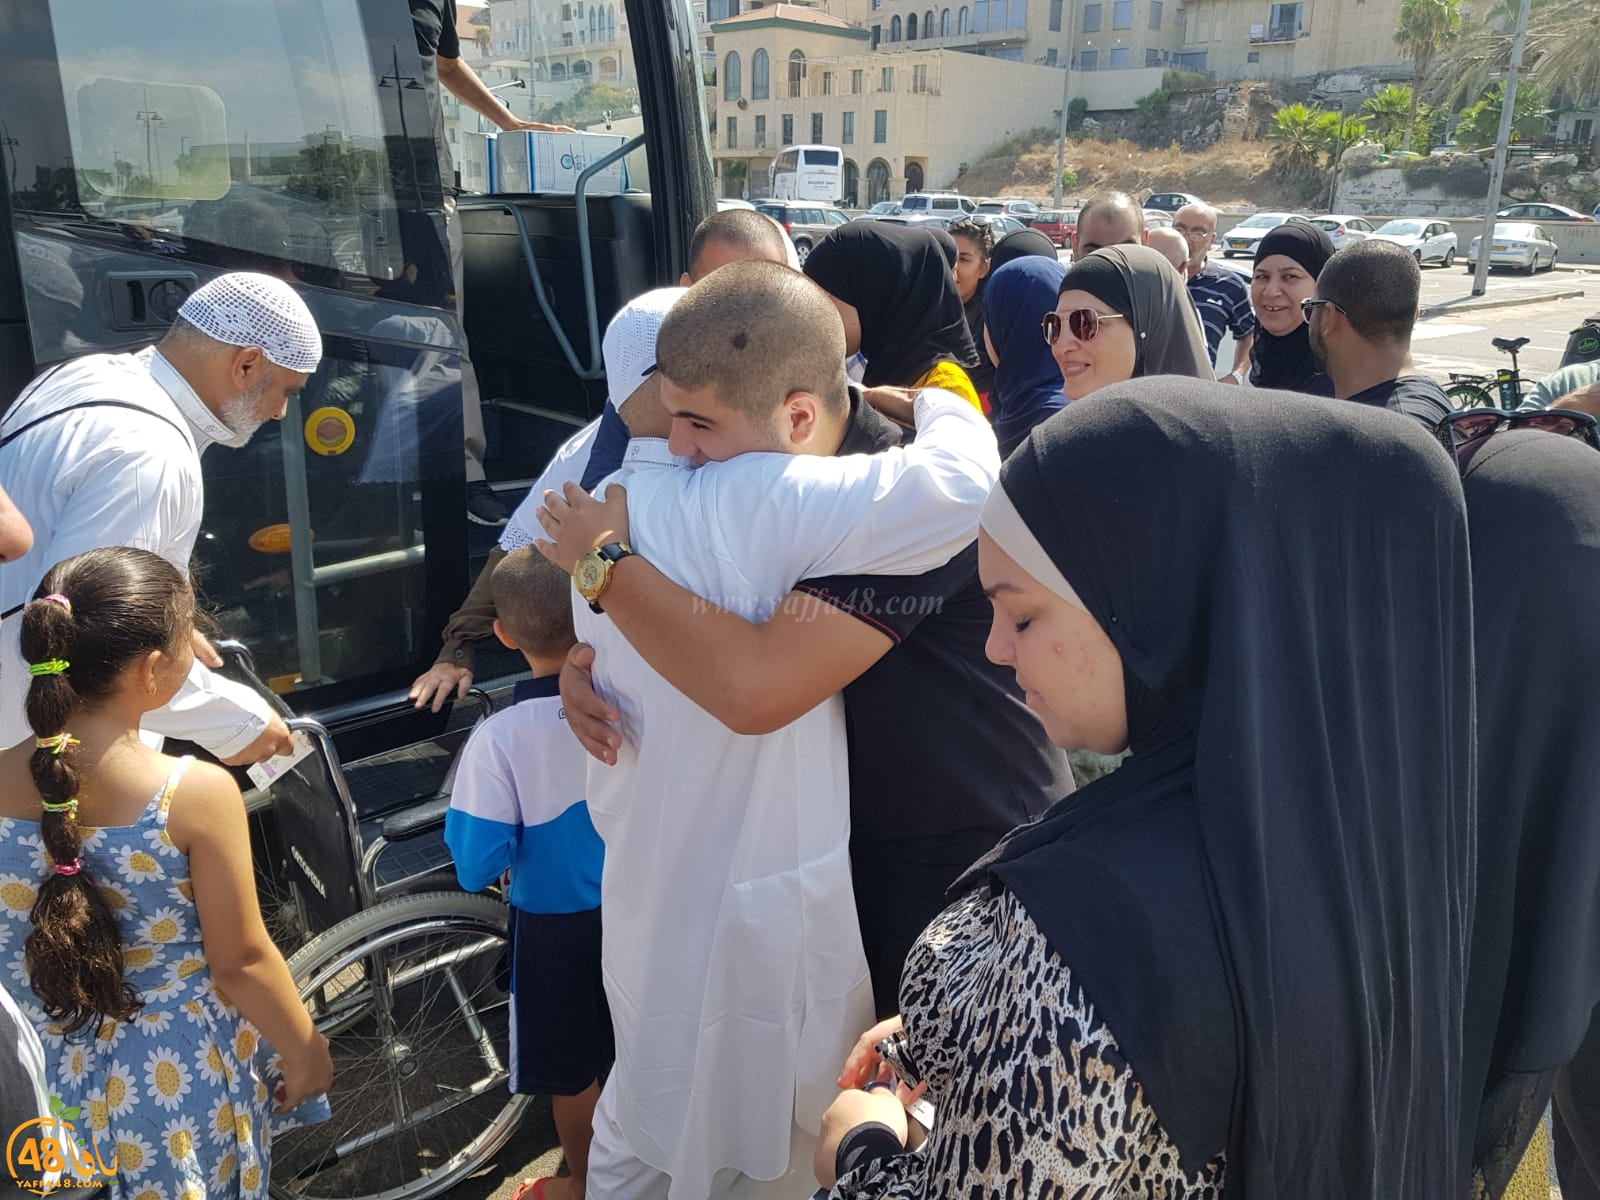 فيديو و صور: عودة الفوج الأول من حجاج مدينة يافا إلى ديارهم سالمين